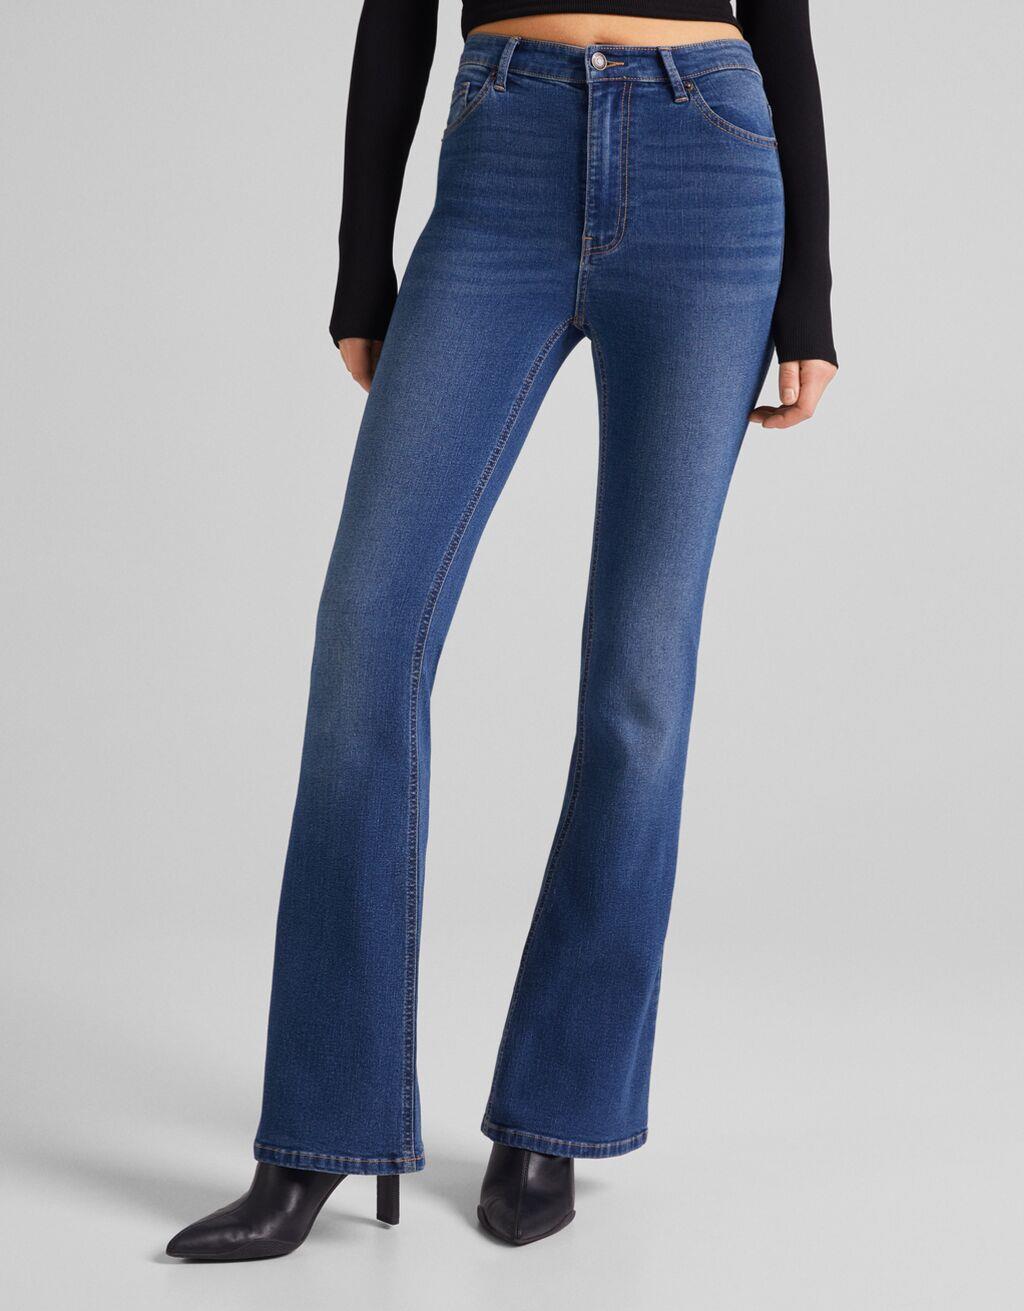 Jeans flare super high waist ajustado, Bershka